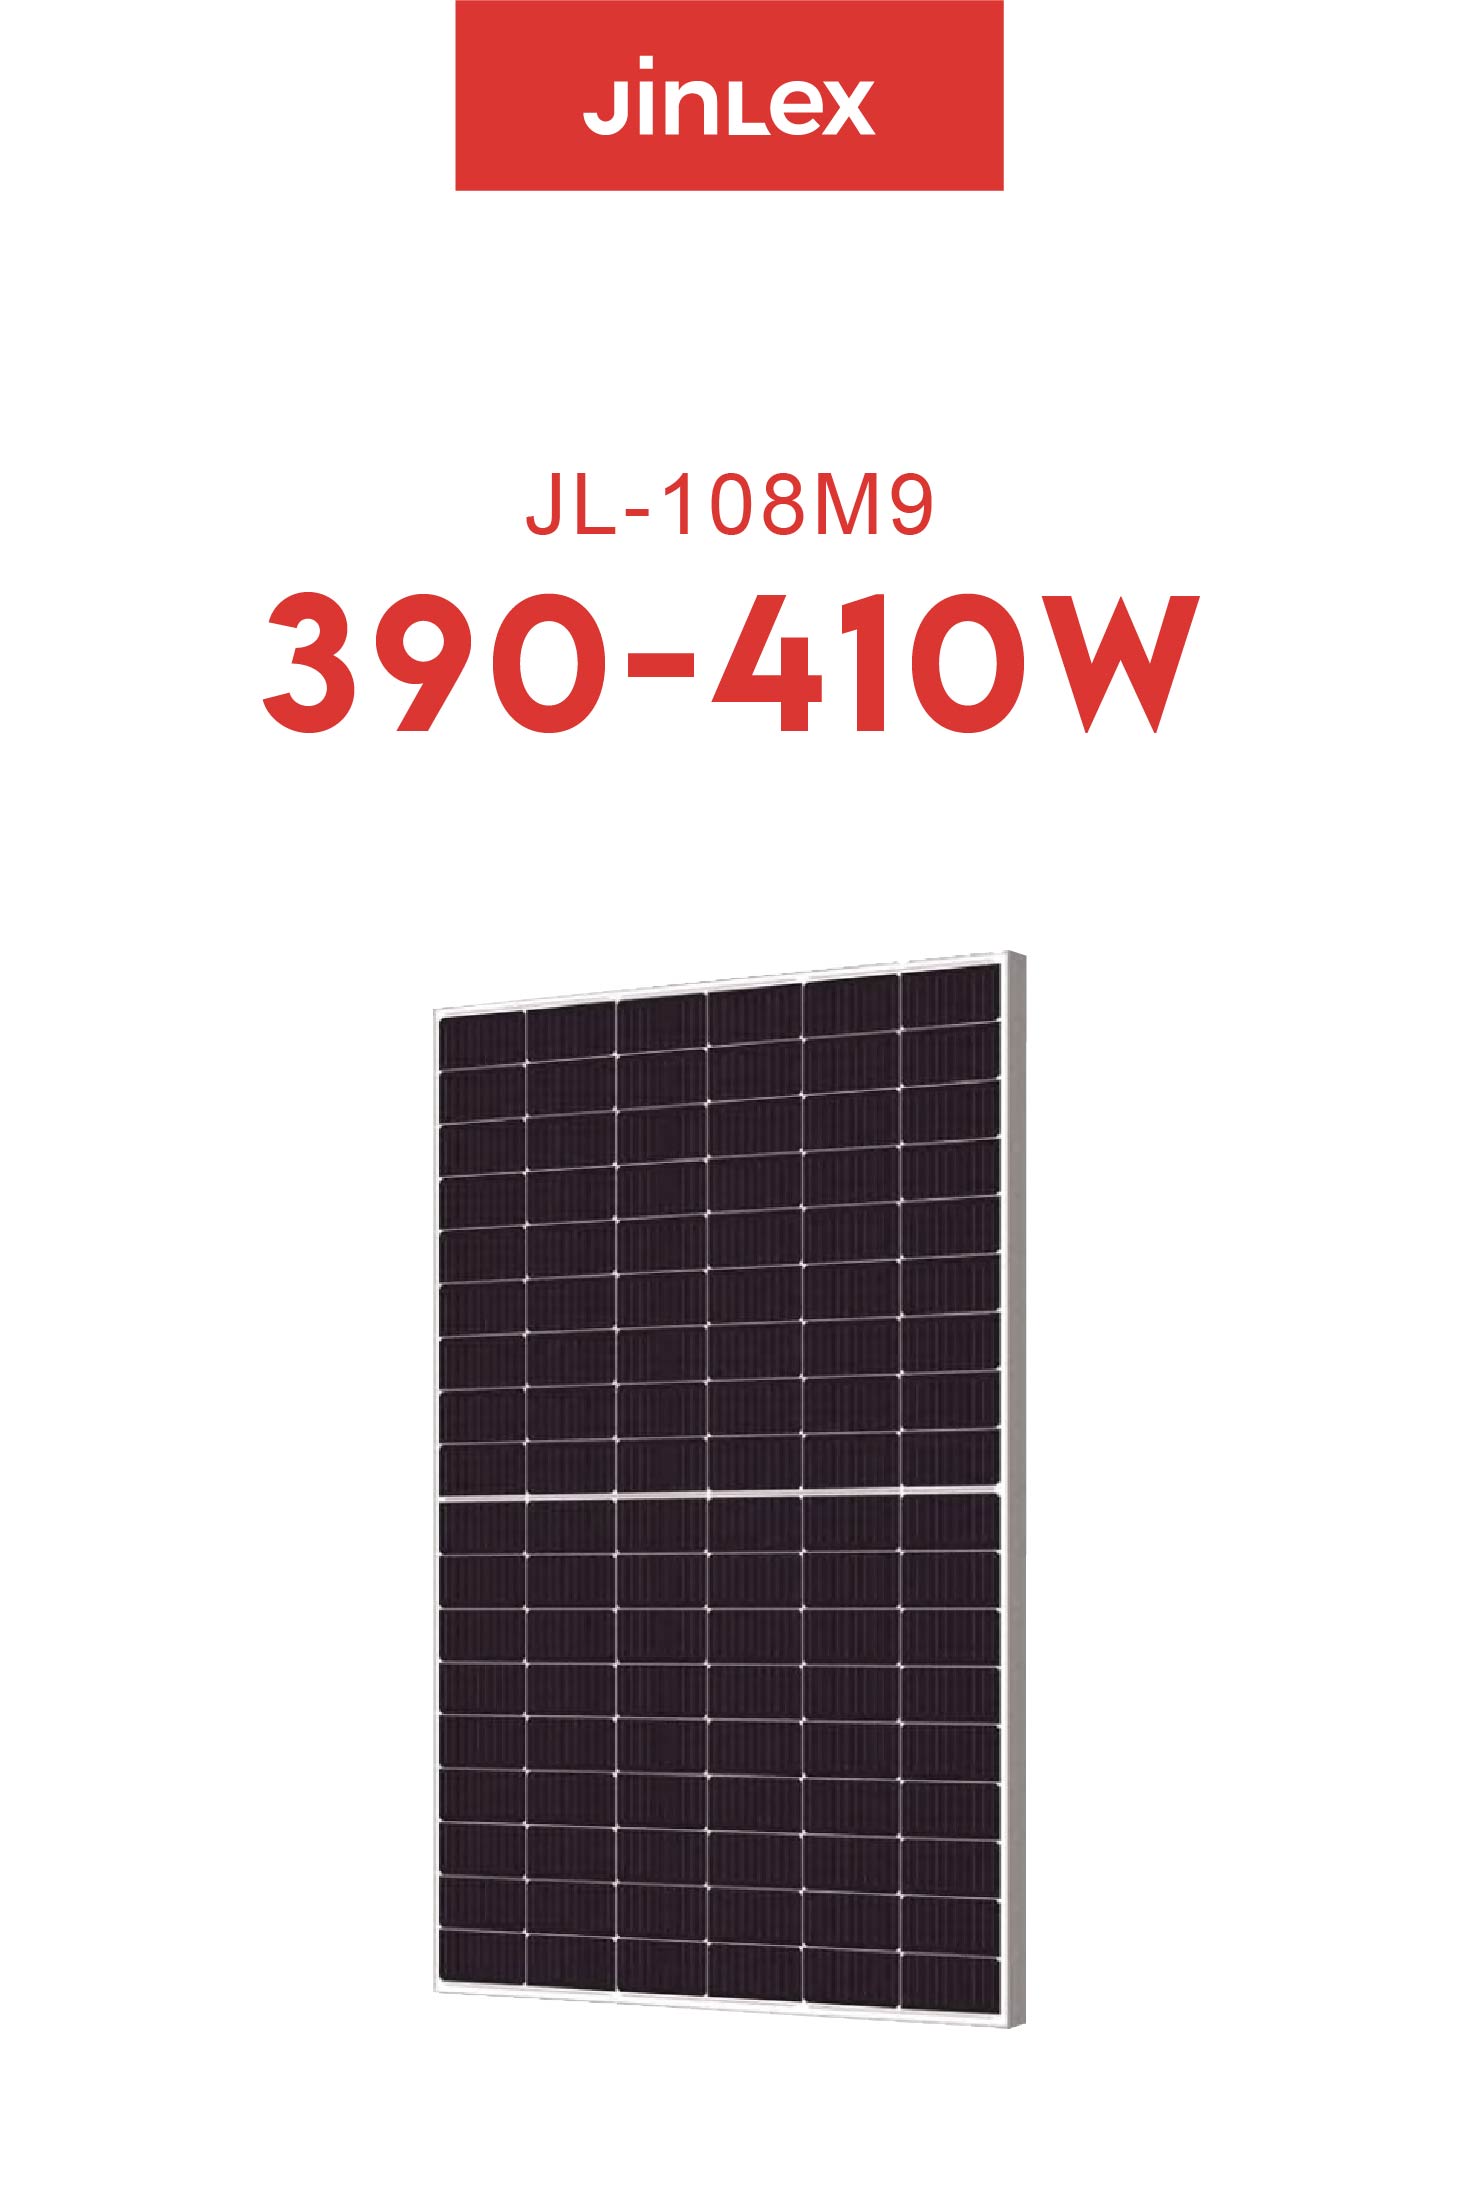 JL(390~410W)-108M9